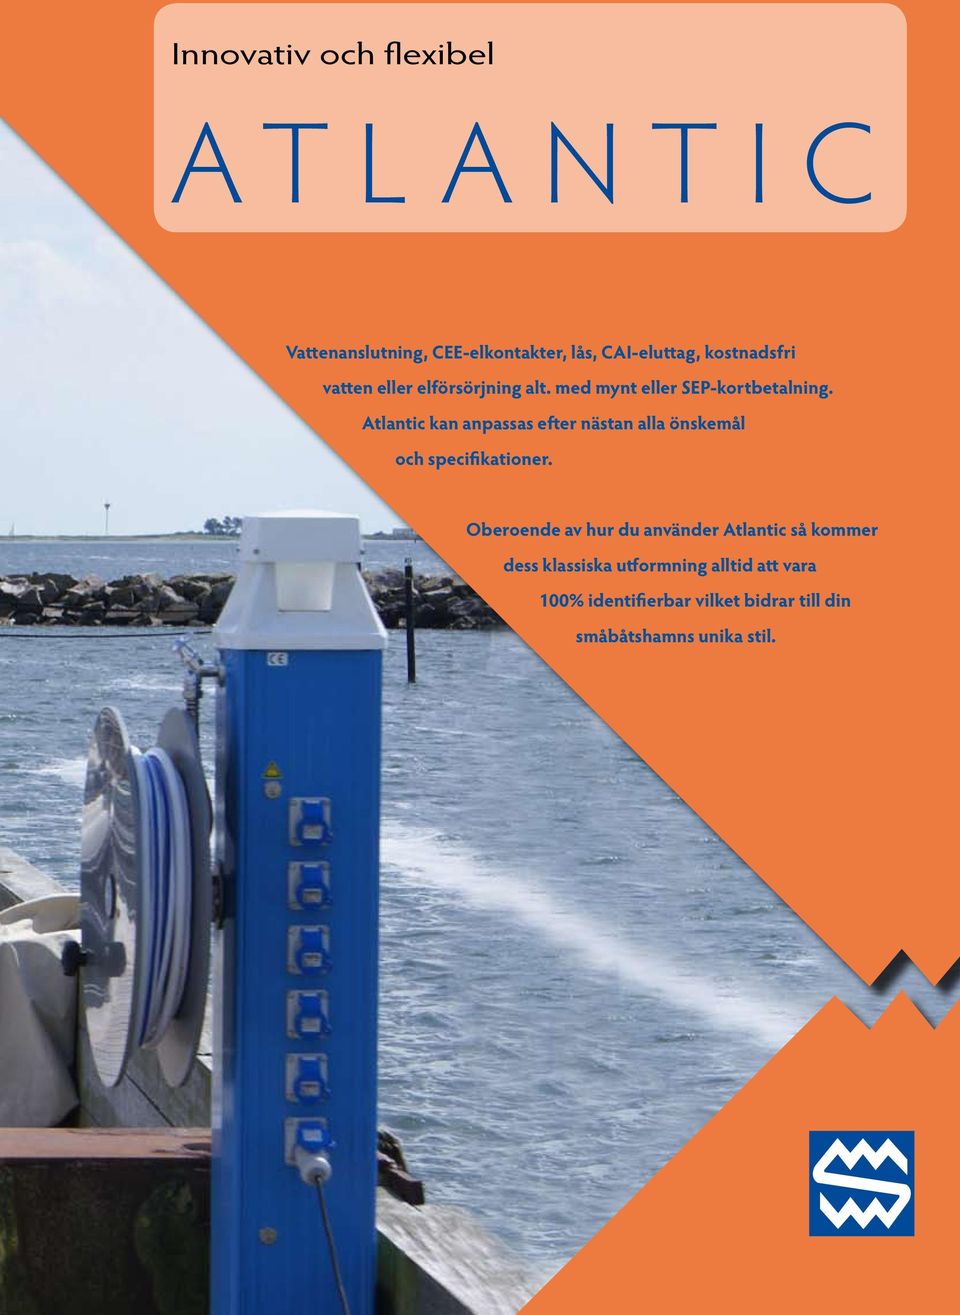 Atlantic kan anpassas efter nästan alla önskemål och specifikationer.